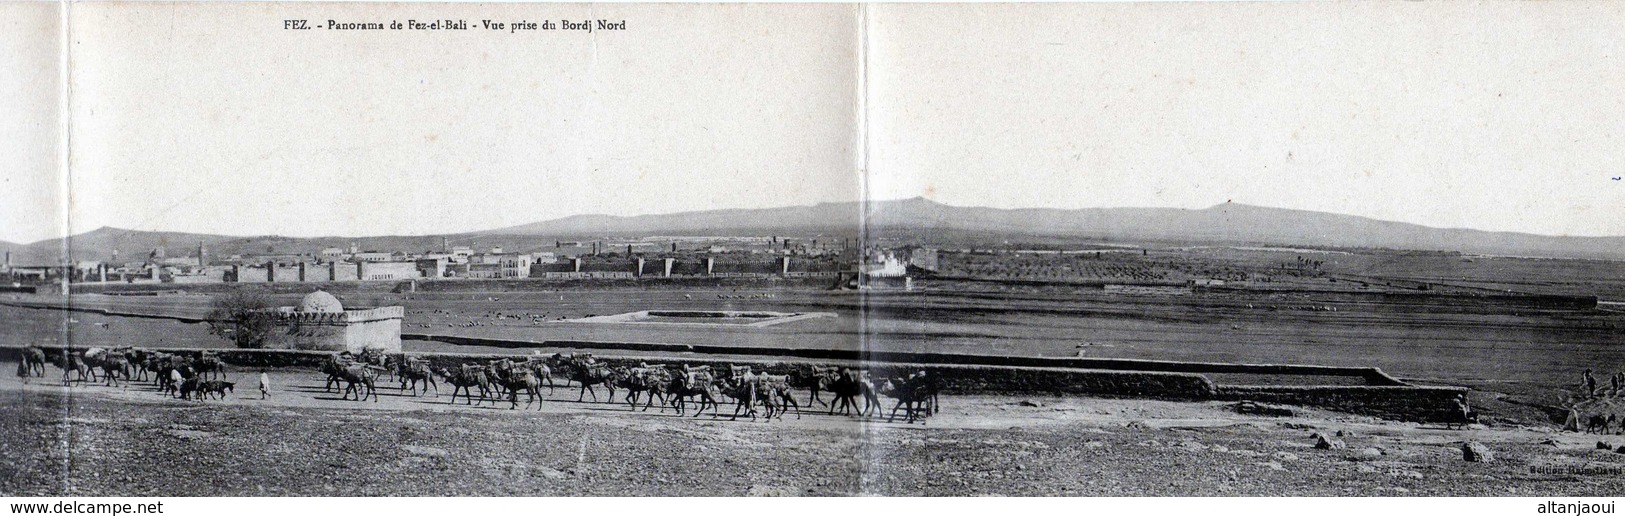 FEZ- 60  2 - CARTE TRIPTYQUE. Panorama De Fez-el-Bali. Vue Prise Du Bordj Nord. 1921. - Fez (Fès)